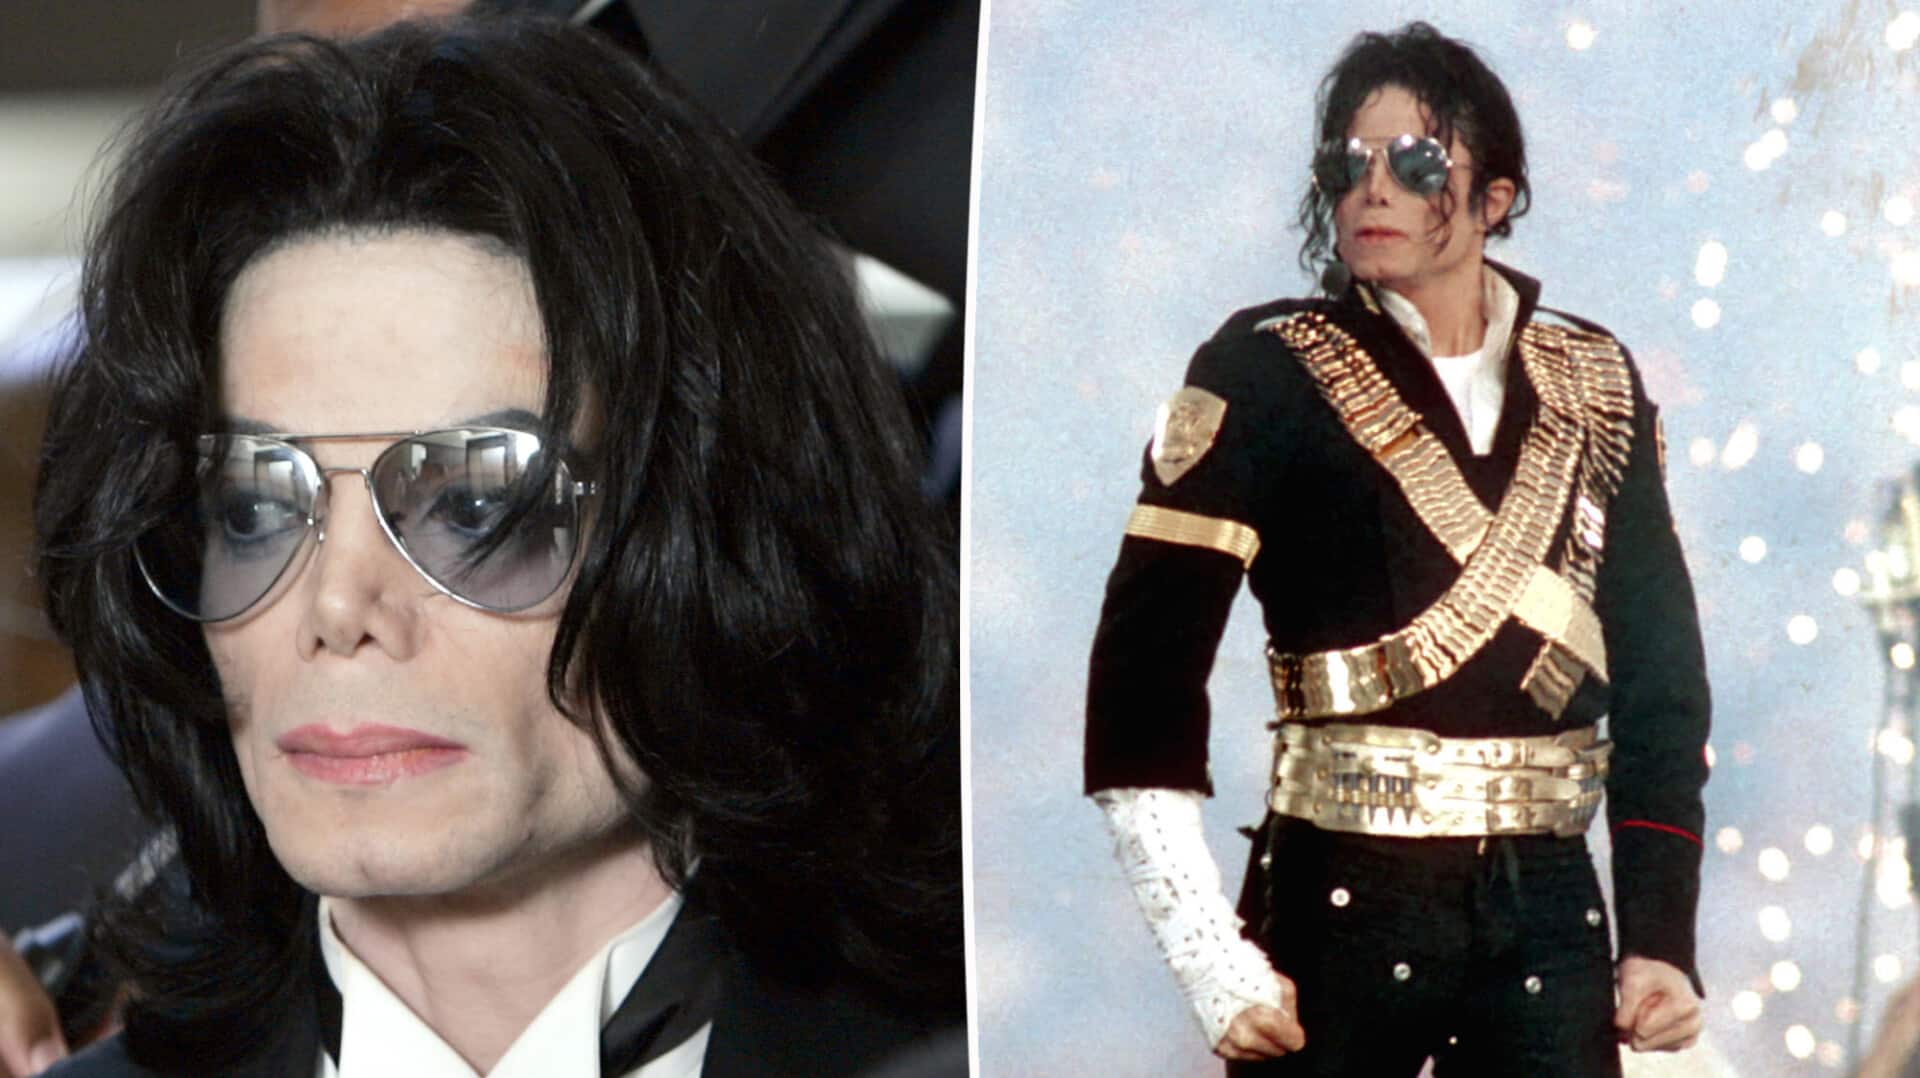 Michael Jackson died deep in $500M debt, says court filings